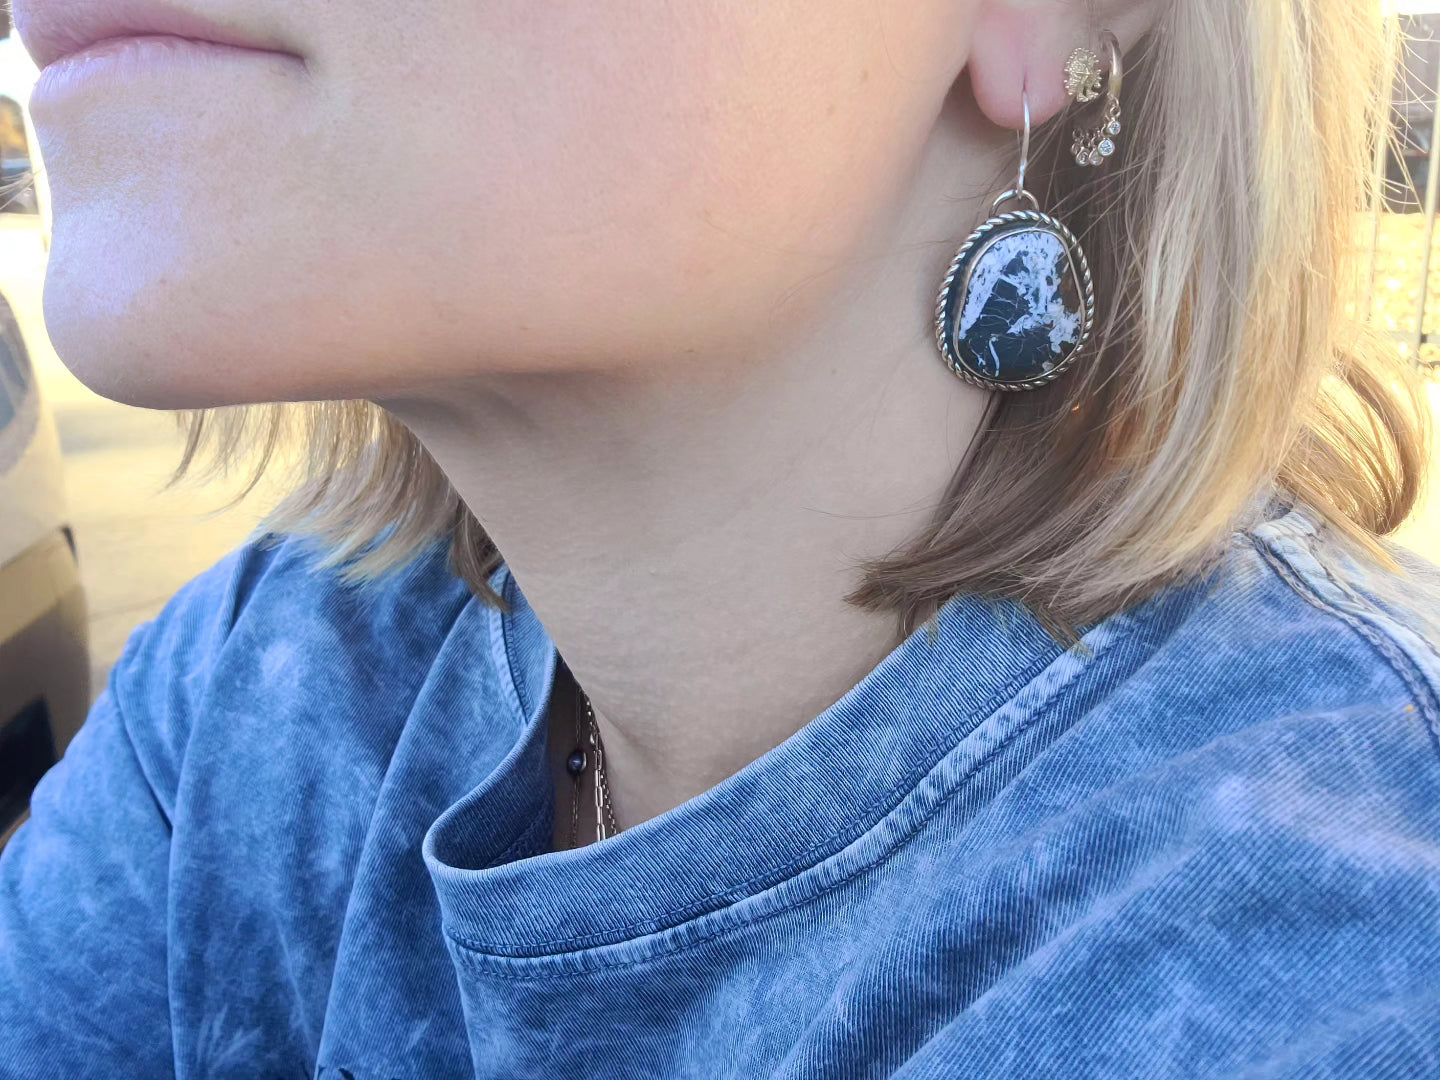 White buffalo turquoise earrings